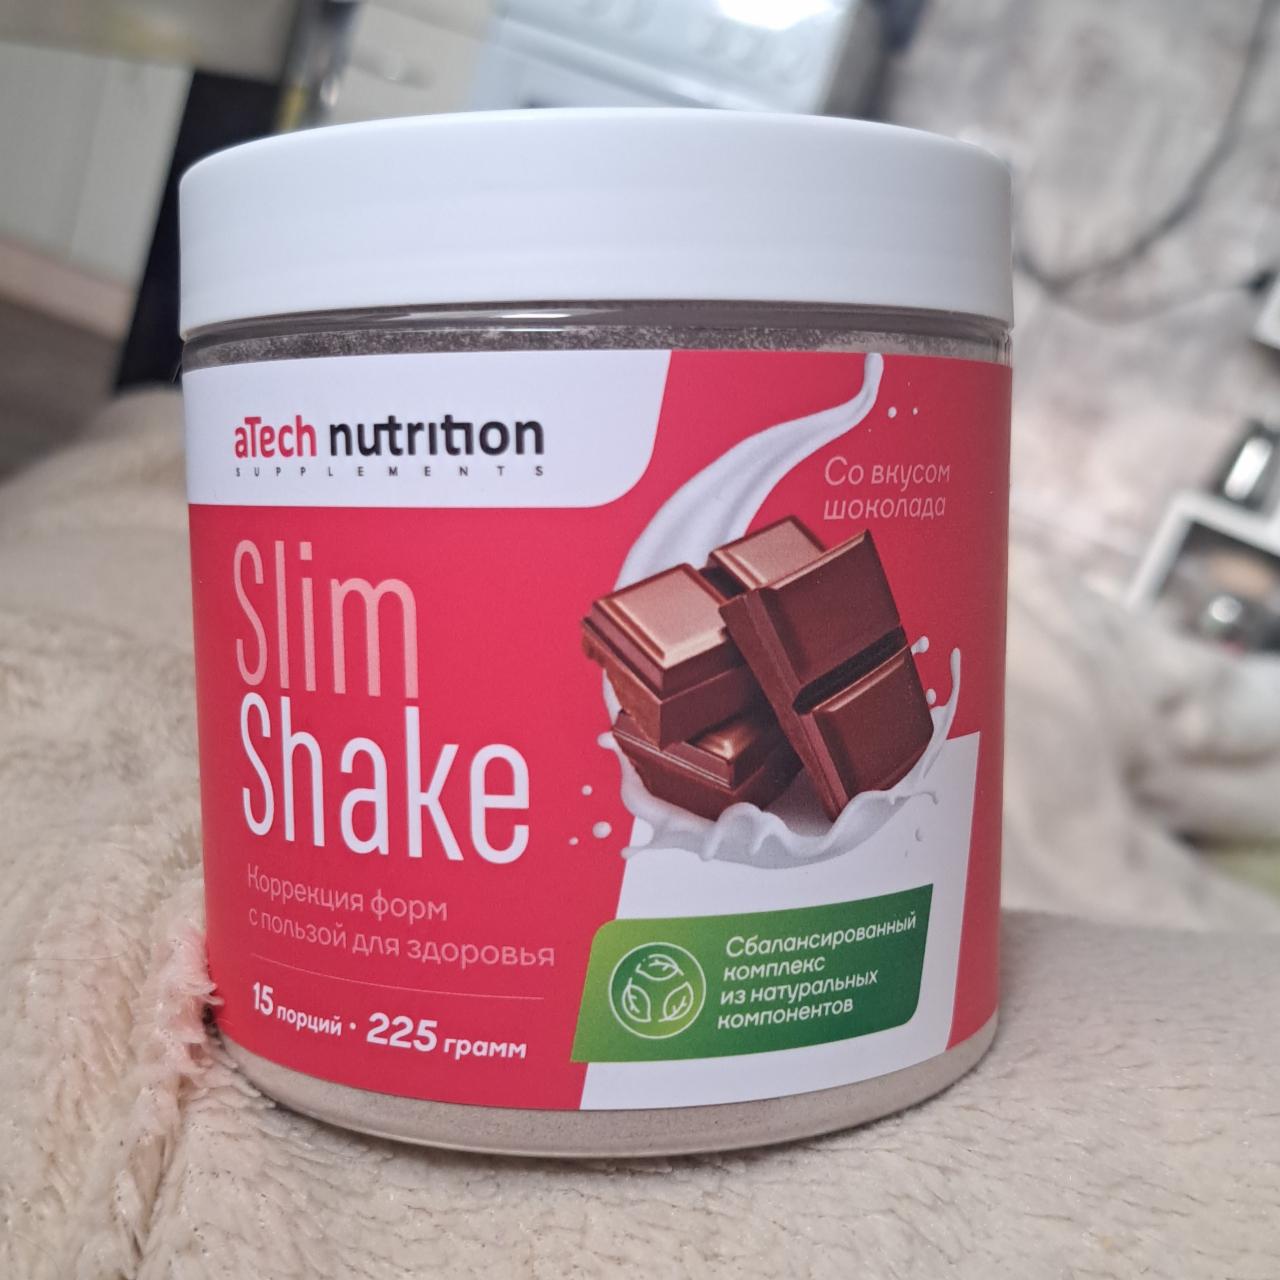 Фото - Смесь порошковая Slim shake со вкусом шоколада Atech Nutrition